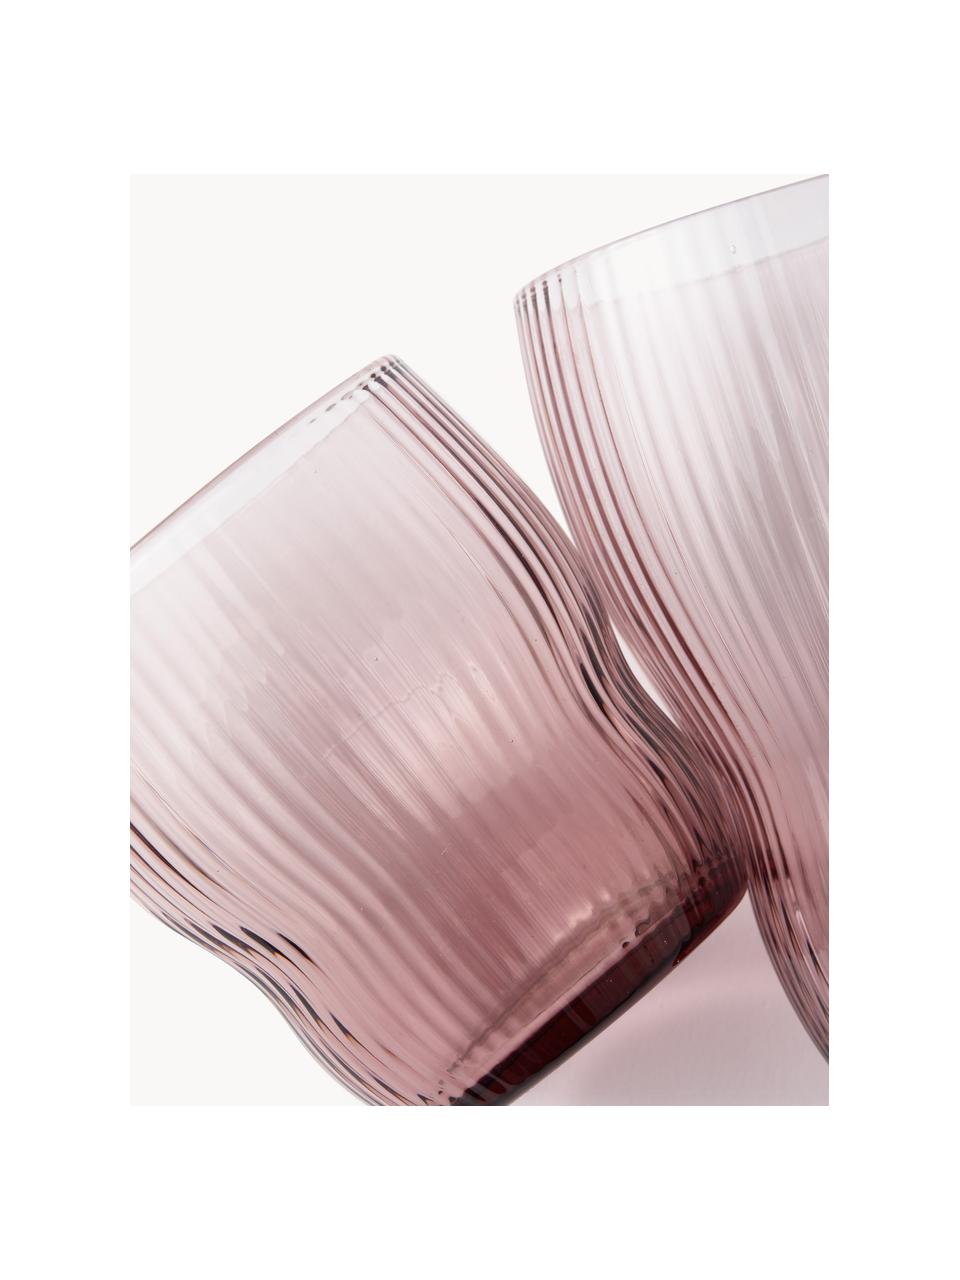 Mundgeblasene Wassergläser Pum mit Rillenstruktur, 2 Stück, Glas, mundgeblasen, Altrosa, Ø 8 x H 9 cm, 200 ml